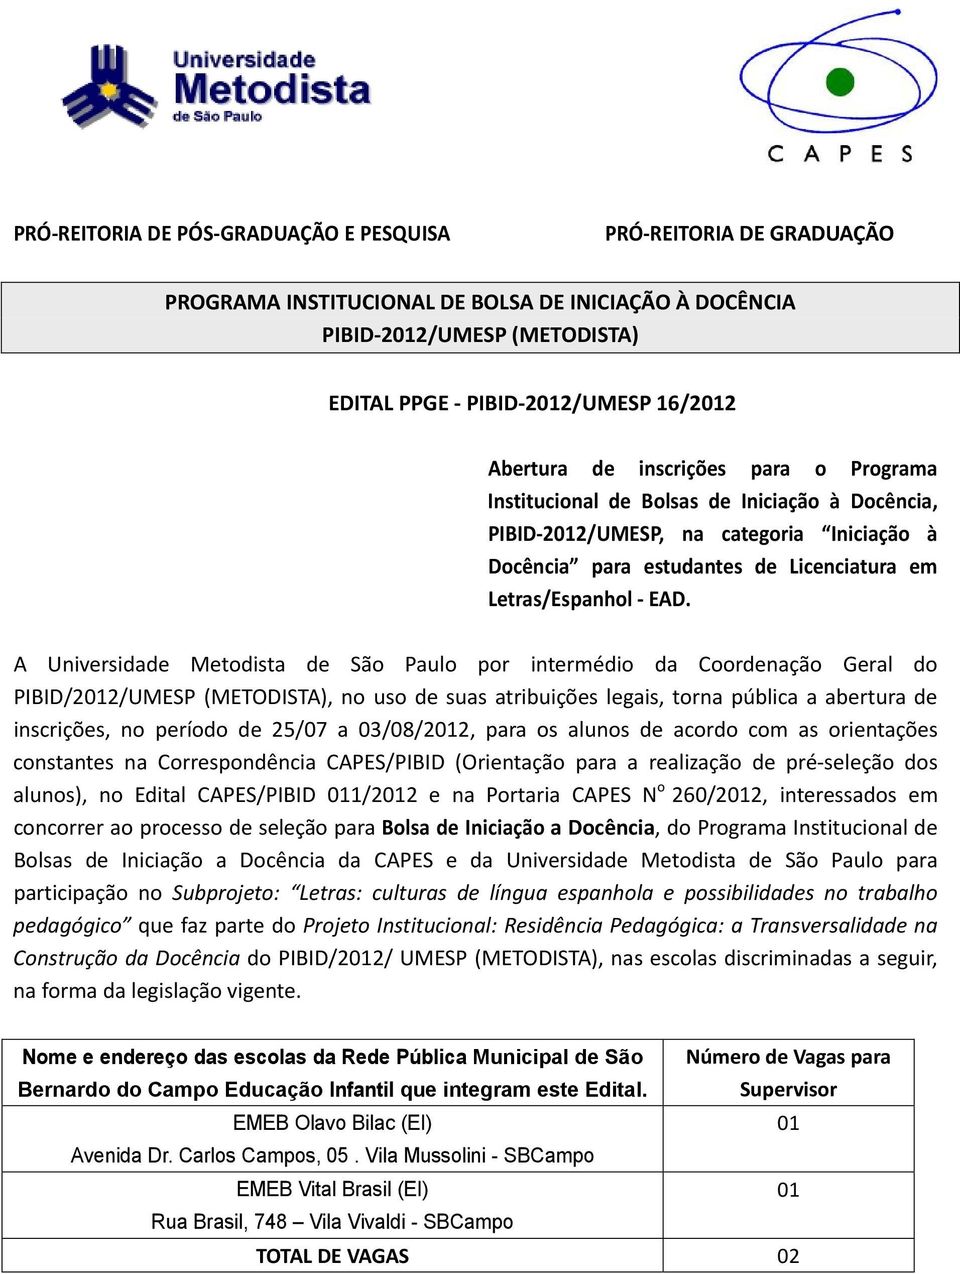 A Universidade Metodista de São Paulo por intermédio da Coordenação Geral do PIBID/2012/UMESP (METODISTA), no uso de suas atribuições legais, torna pública a abertura de inscrições, no período de